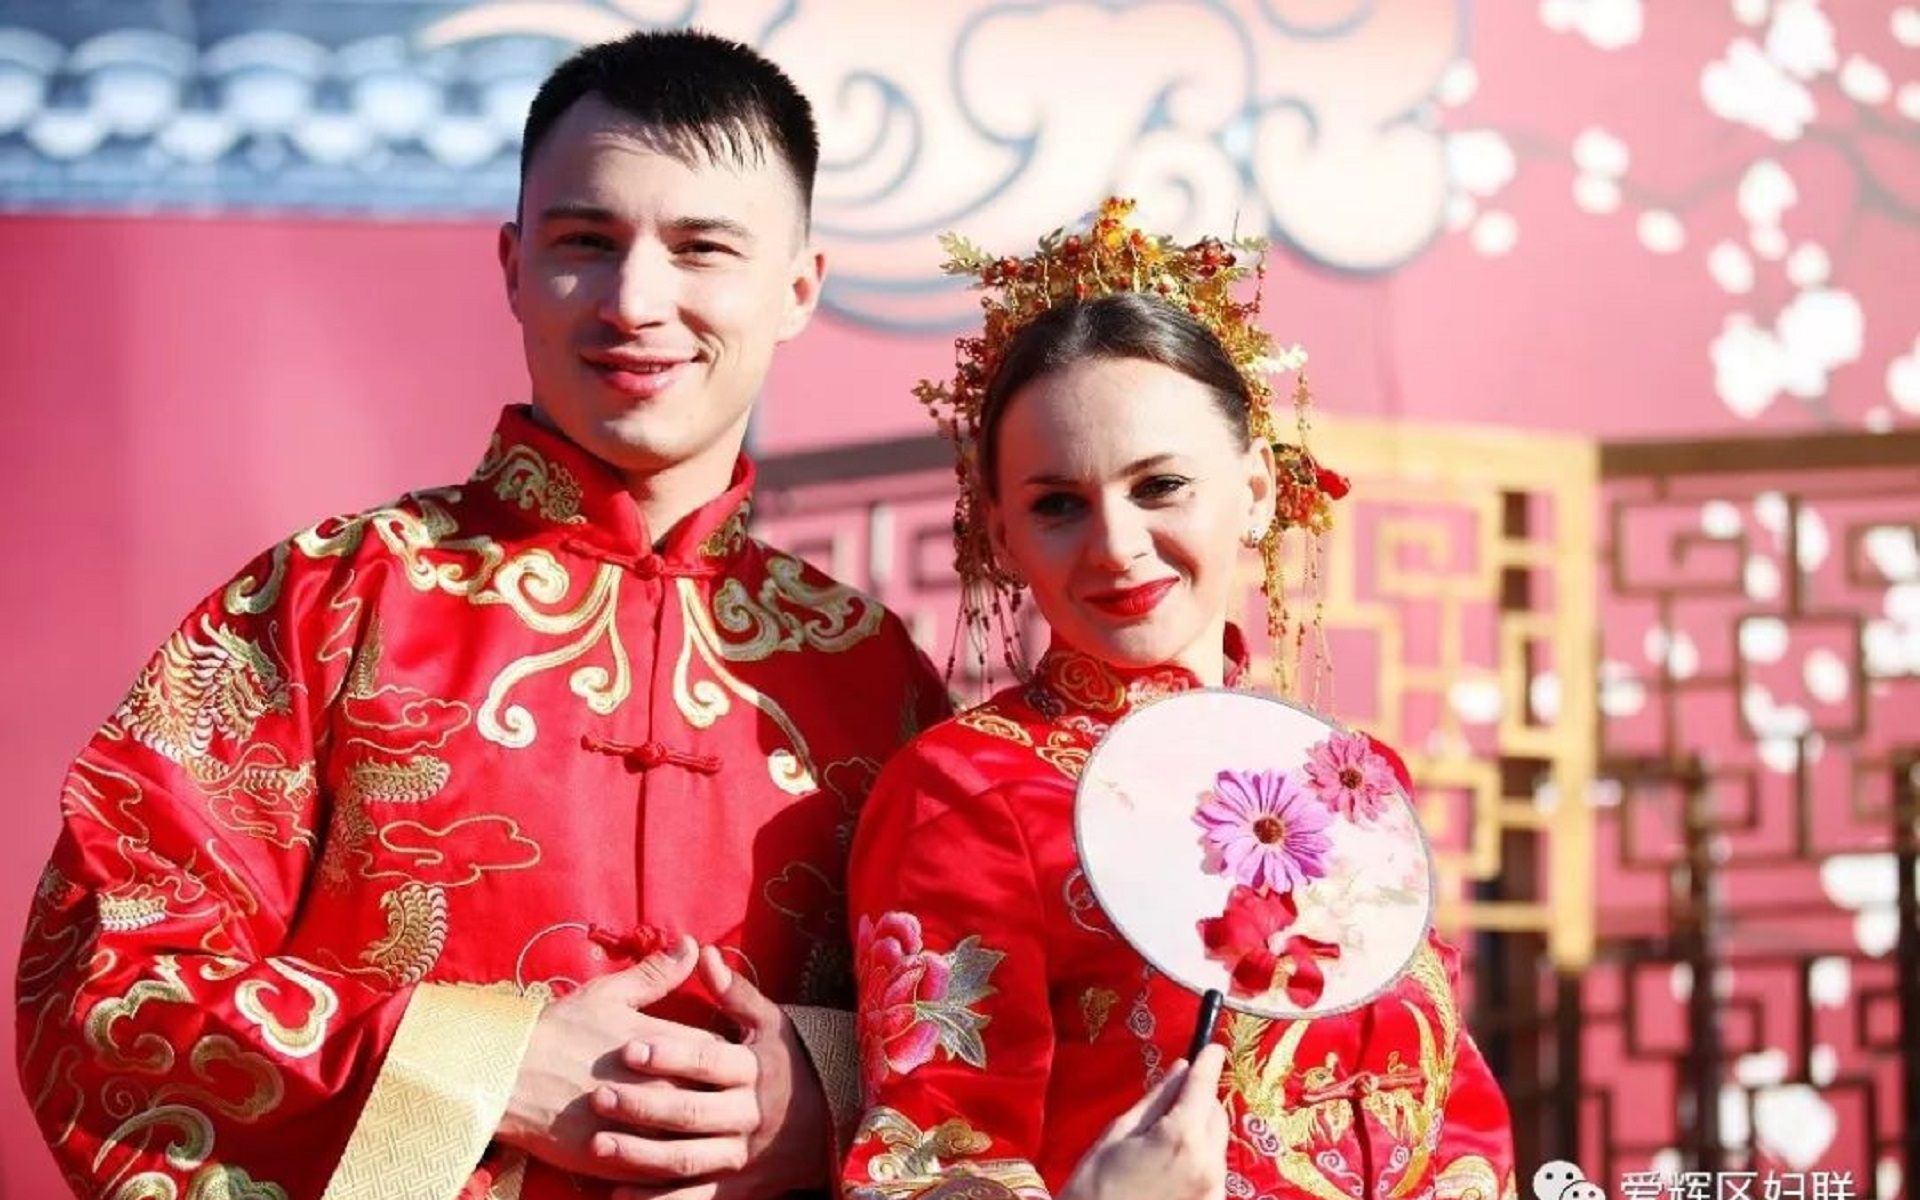 中俄通婚普遍,如不了解俄罗斯美女生理缺陷,中国男人表示不敢娶